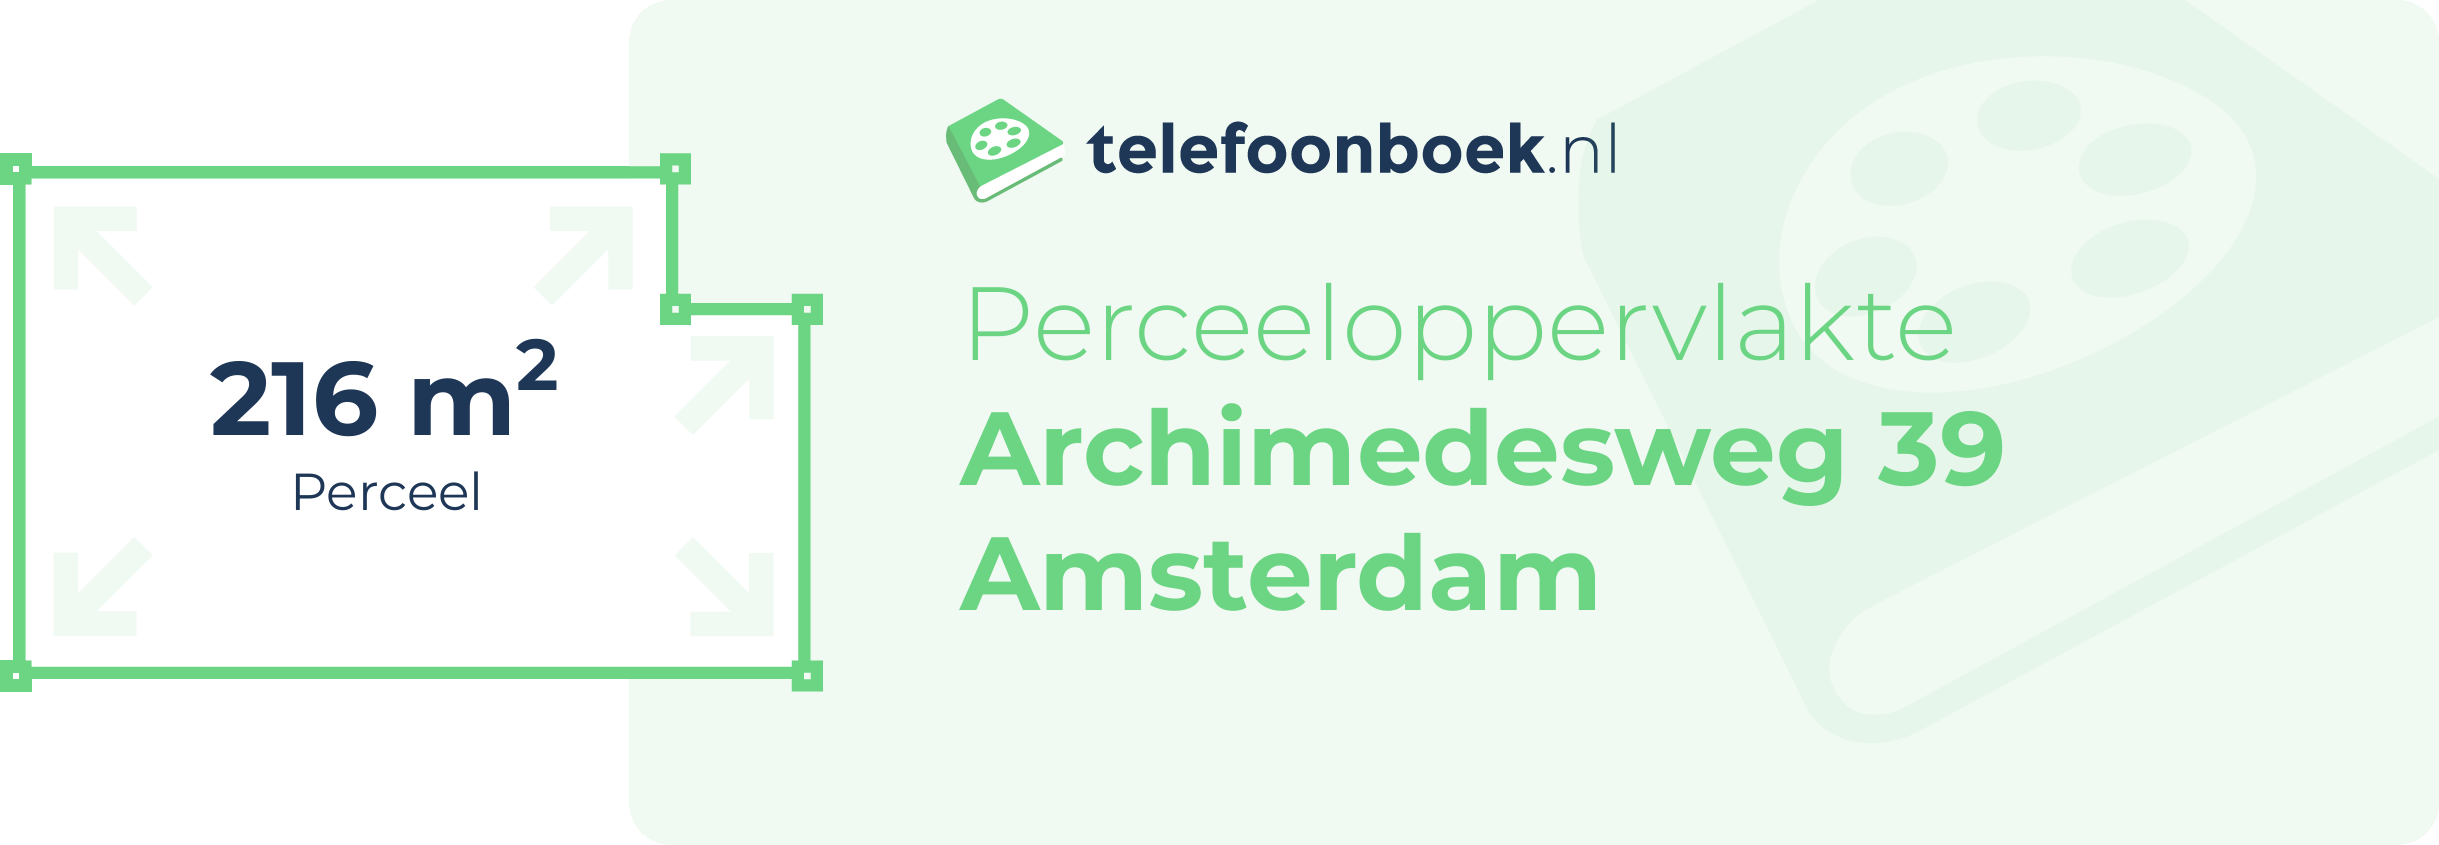 Perceeloppervlakte Archimedesweg 39 Amsterdam